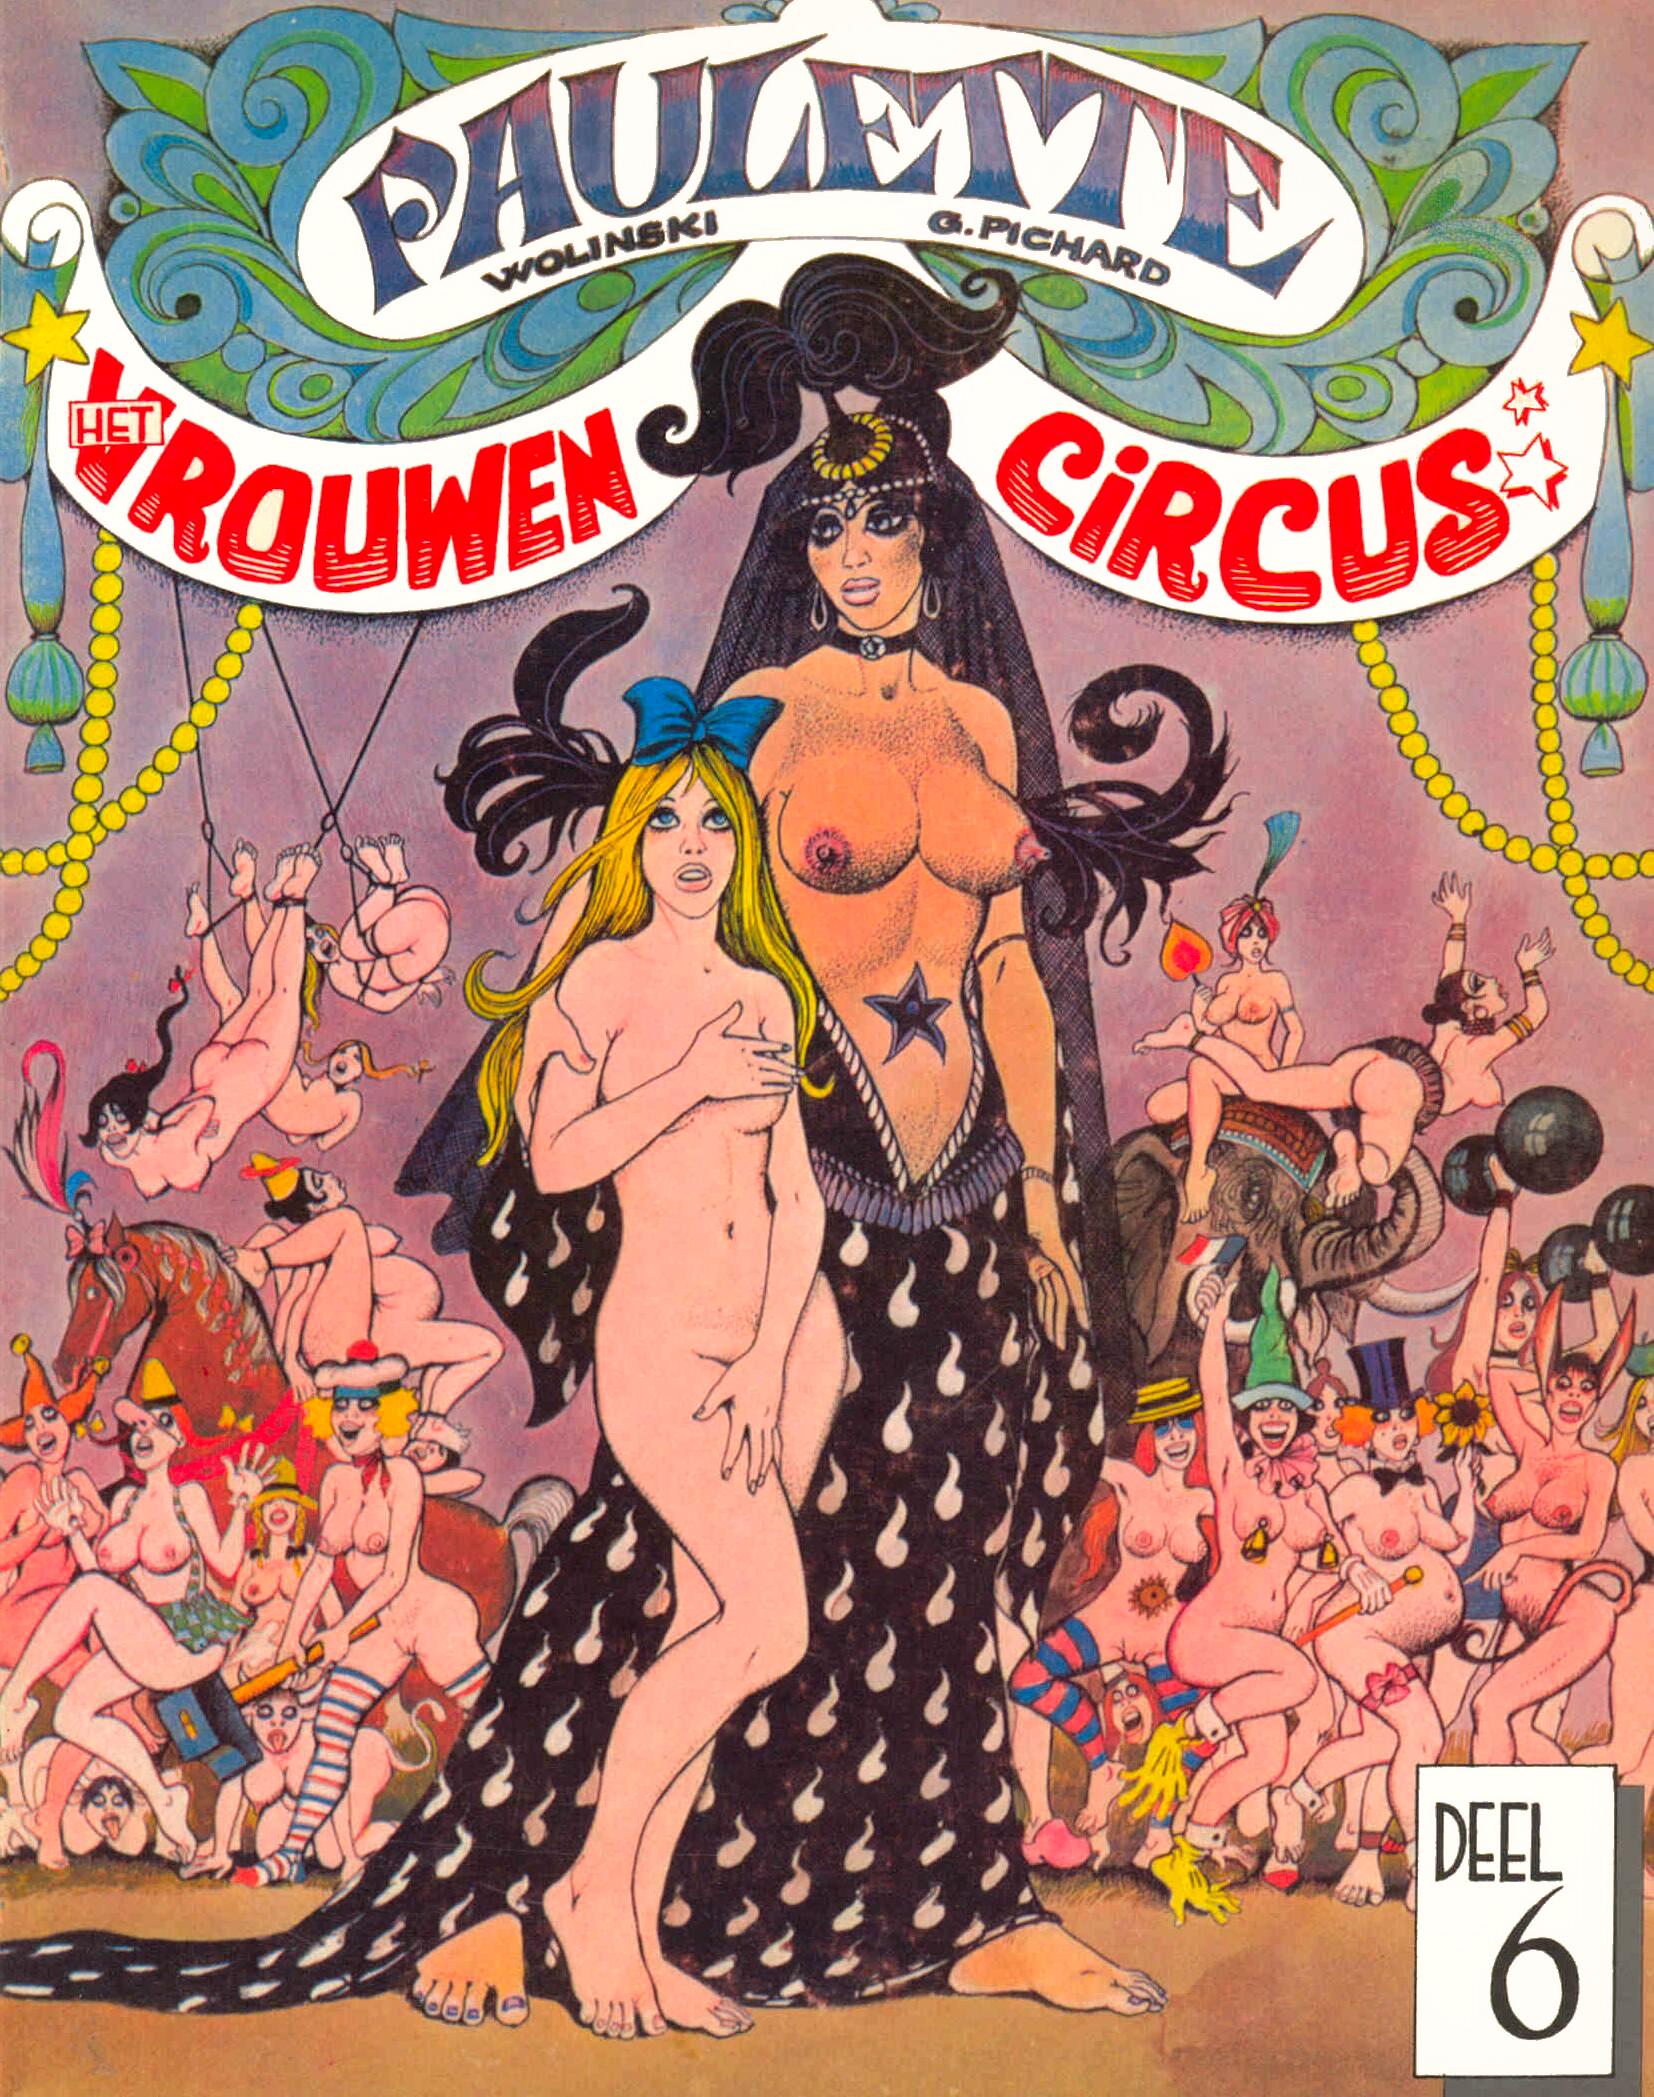 Paulette Het Vrouwen Circus00